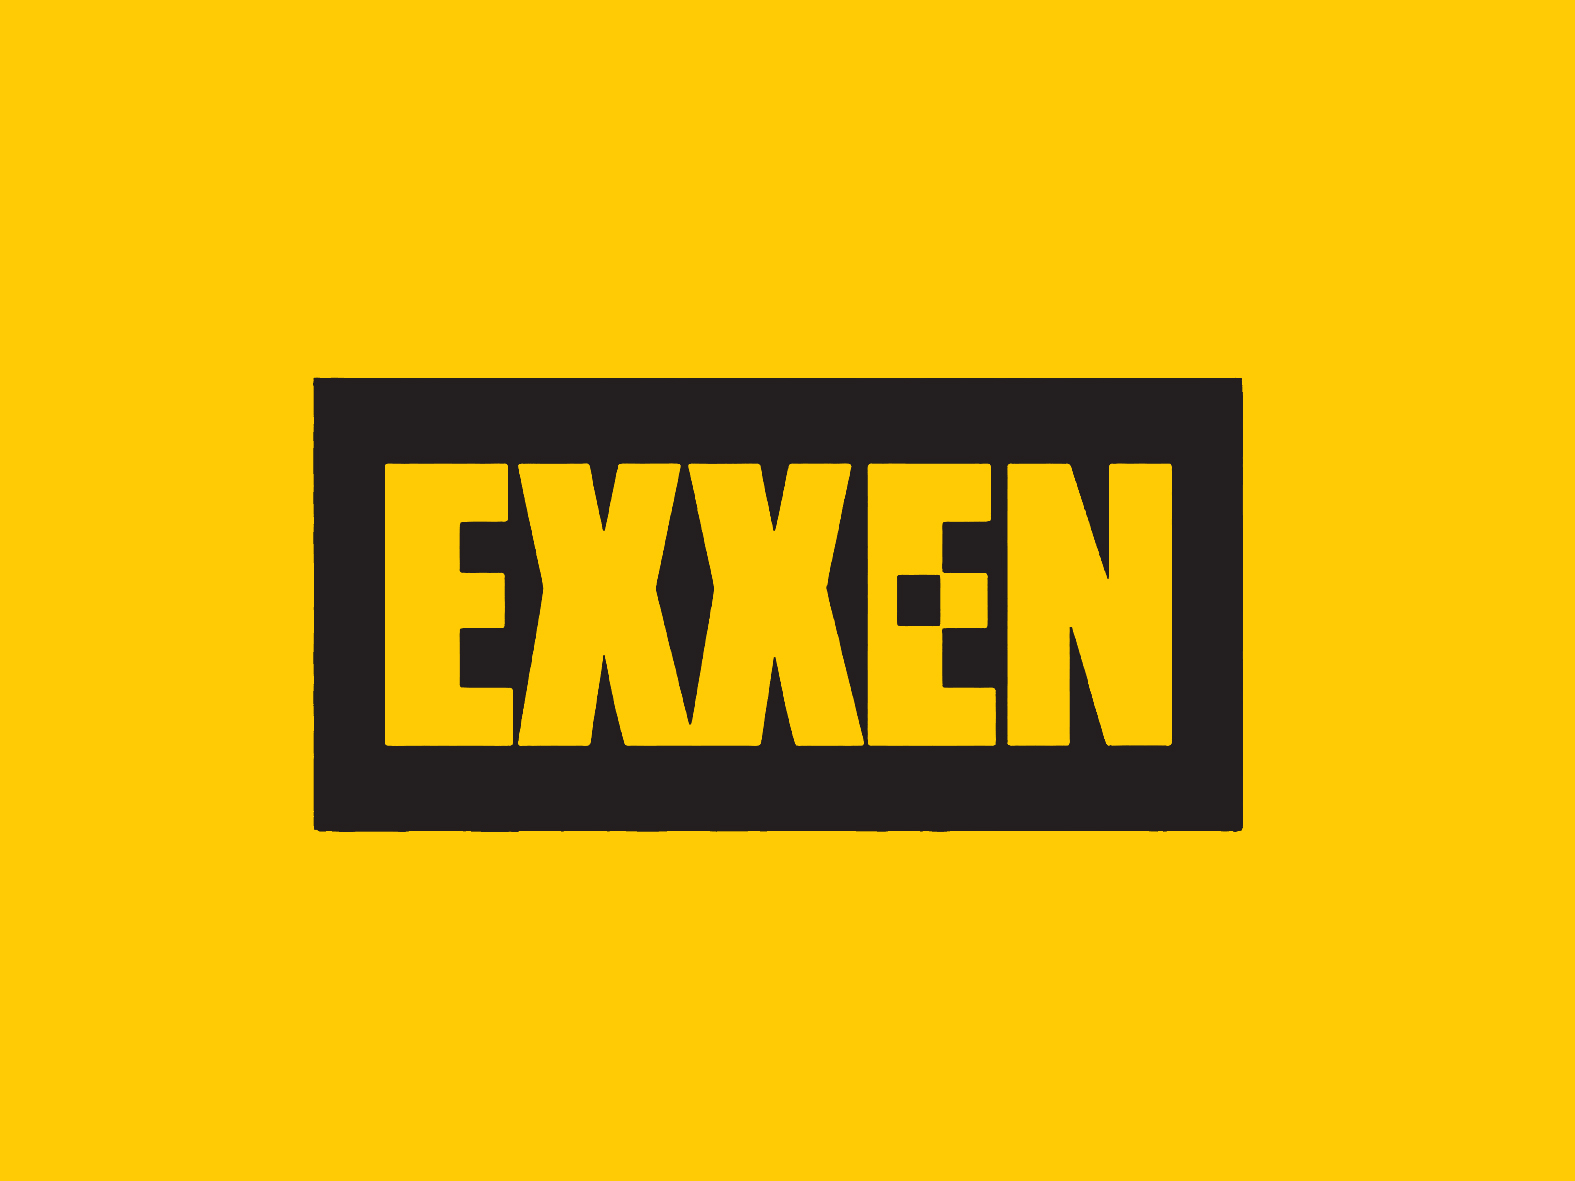 Exxen fiyatı ve yeni yapımları belli oldu